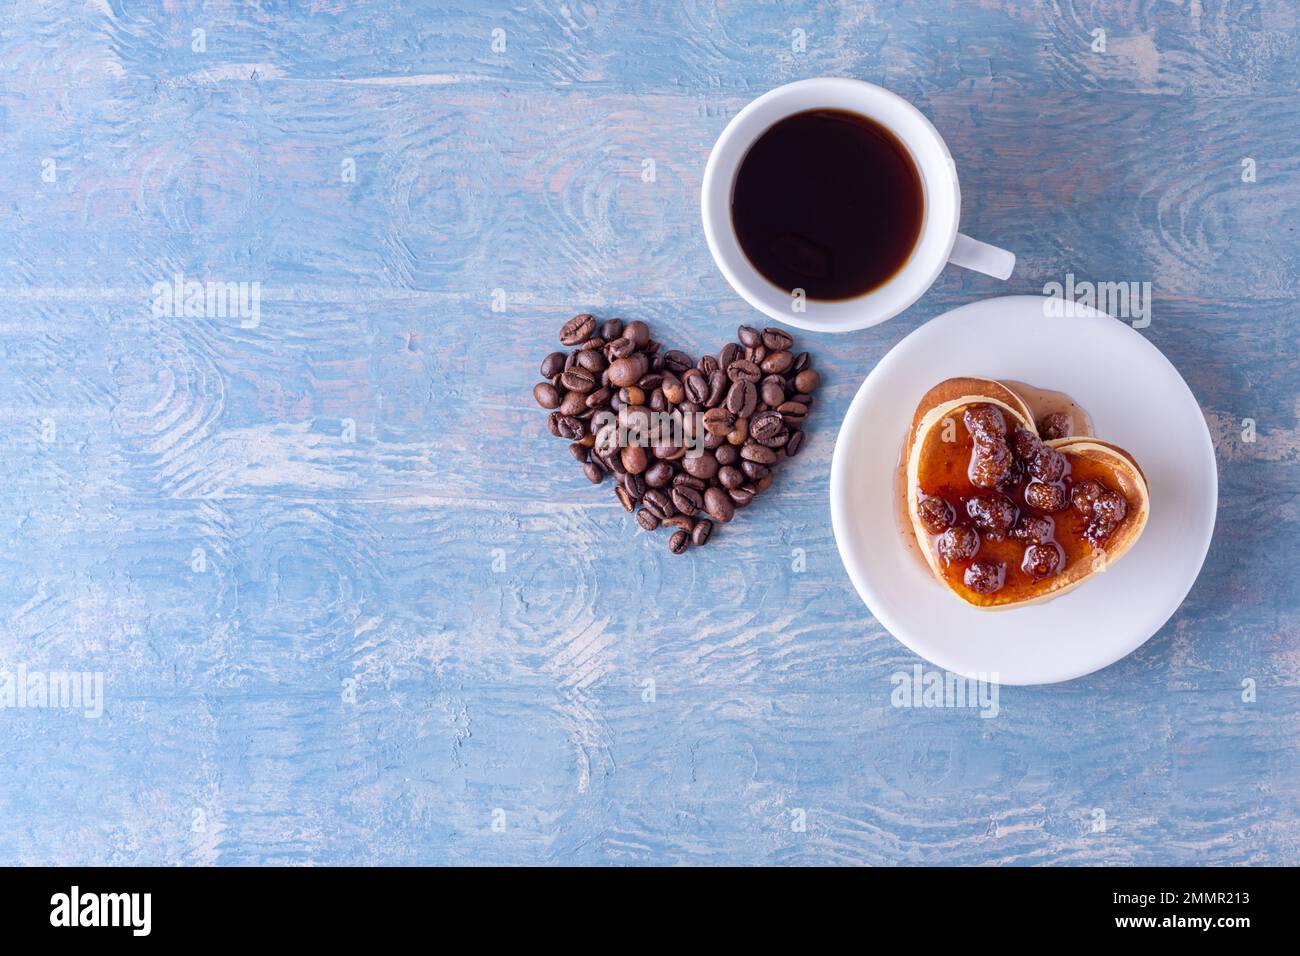 Frühstück für deine Geliebte. Hausgemachte herzförmige Pfannkuchen mit Beerenmarmelade, herzförmig aus Kaffeebohnen und einer weißen Tasse heißem Kaffee auf einem blauen Stockfoto